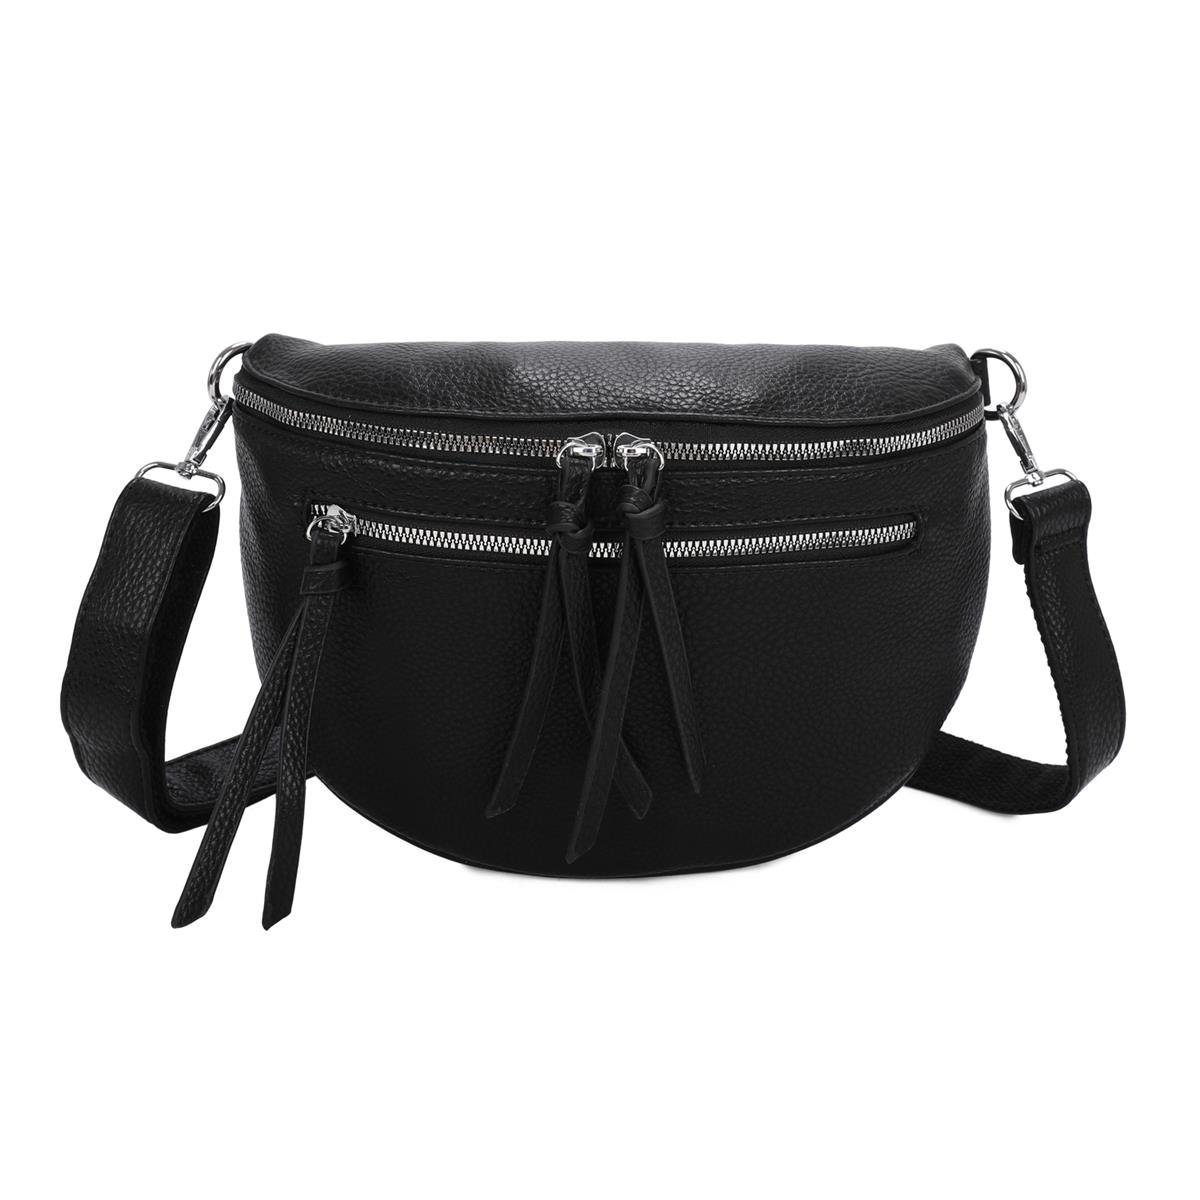 ITALYSHOP24 Bauchtasche Damen Gürteltasche Hüfttasche Bodybag Handytasche, als Schultertasche, CrossOver, Umhängetasche tragbar